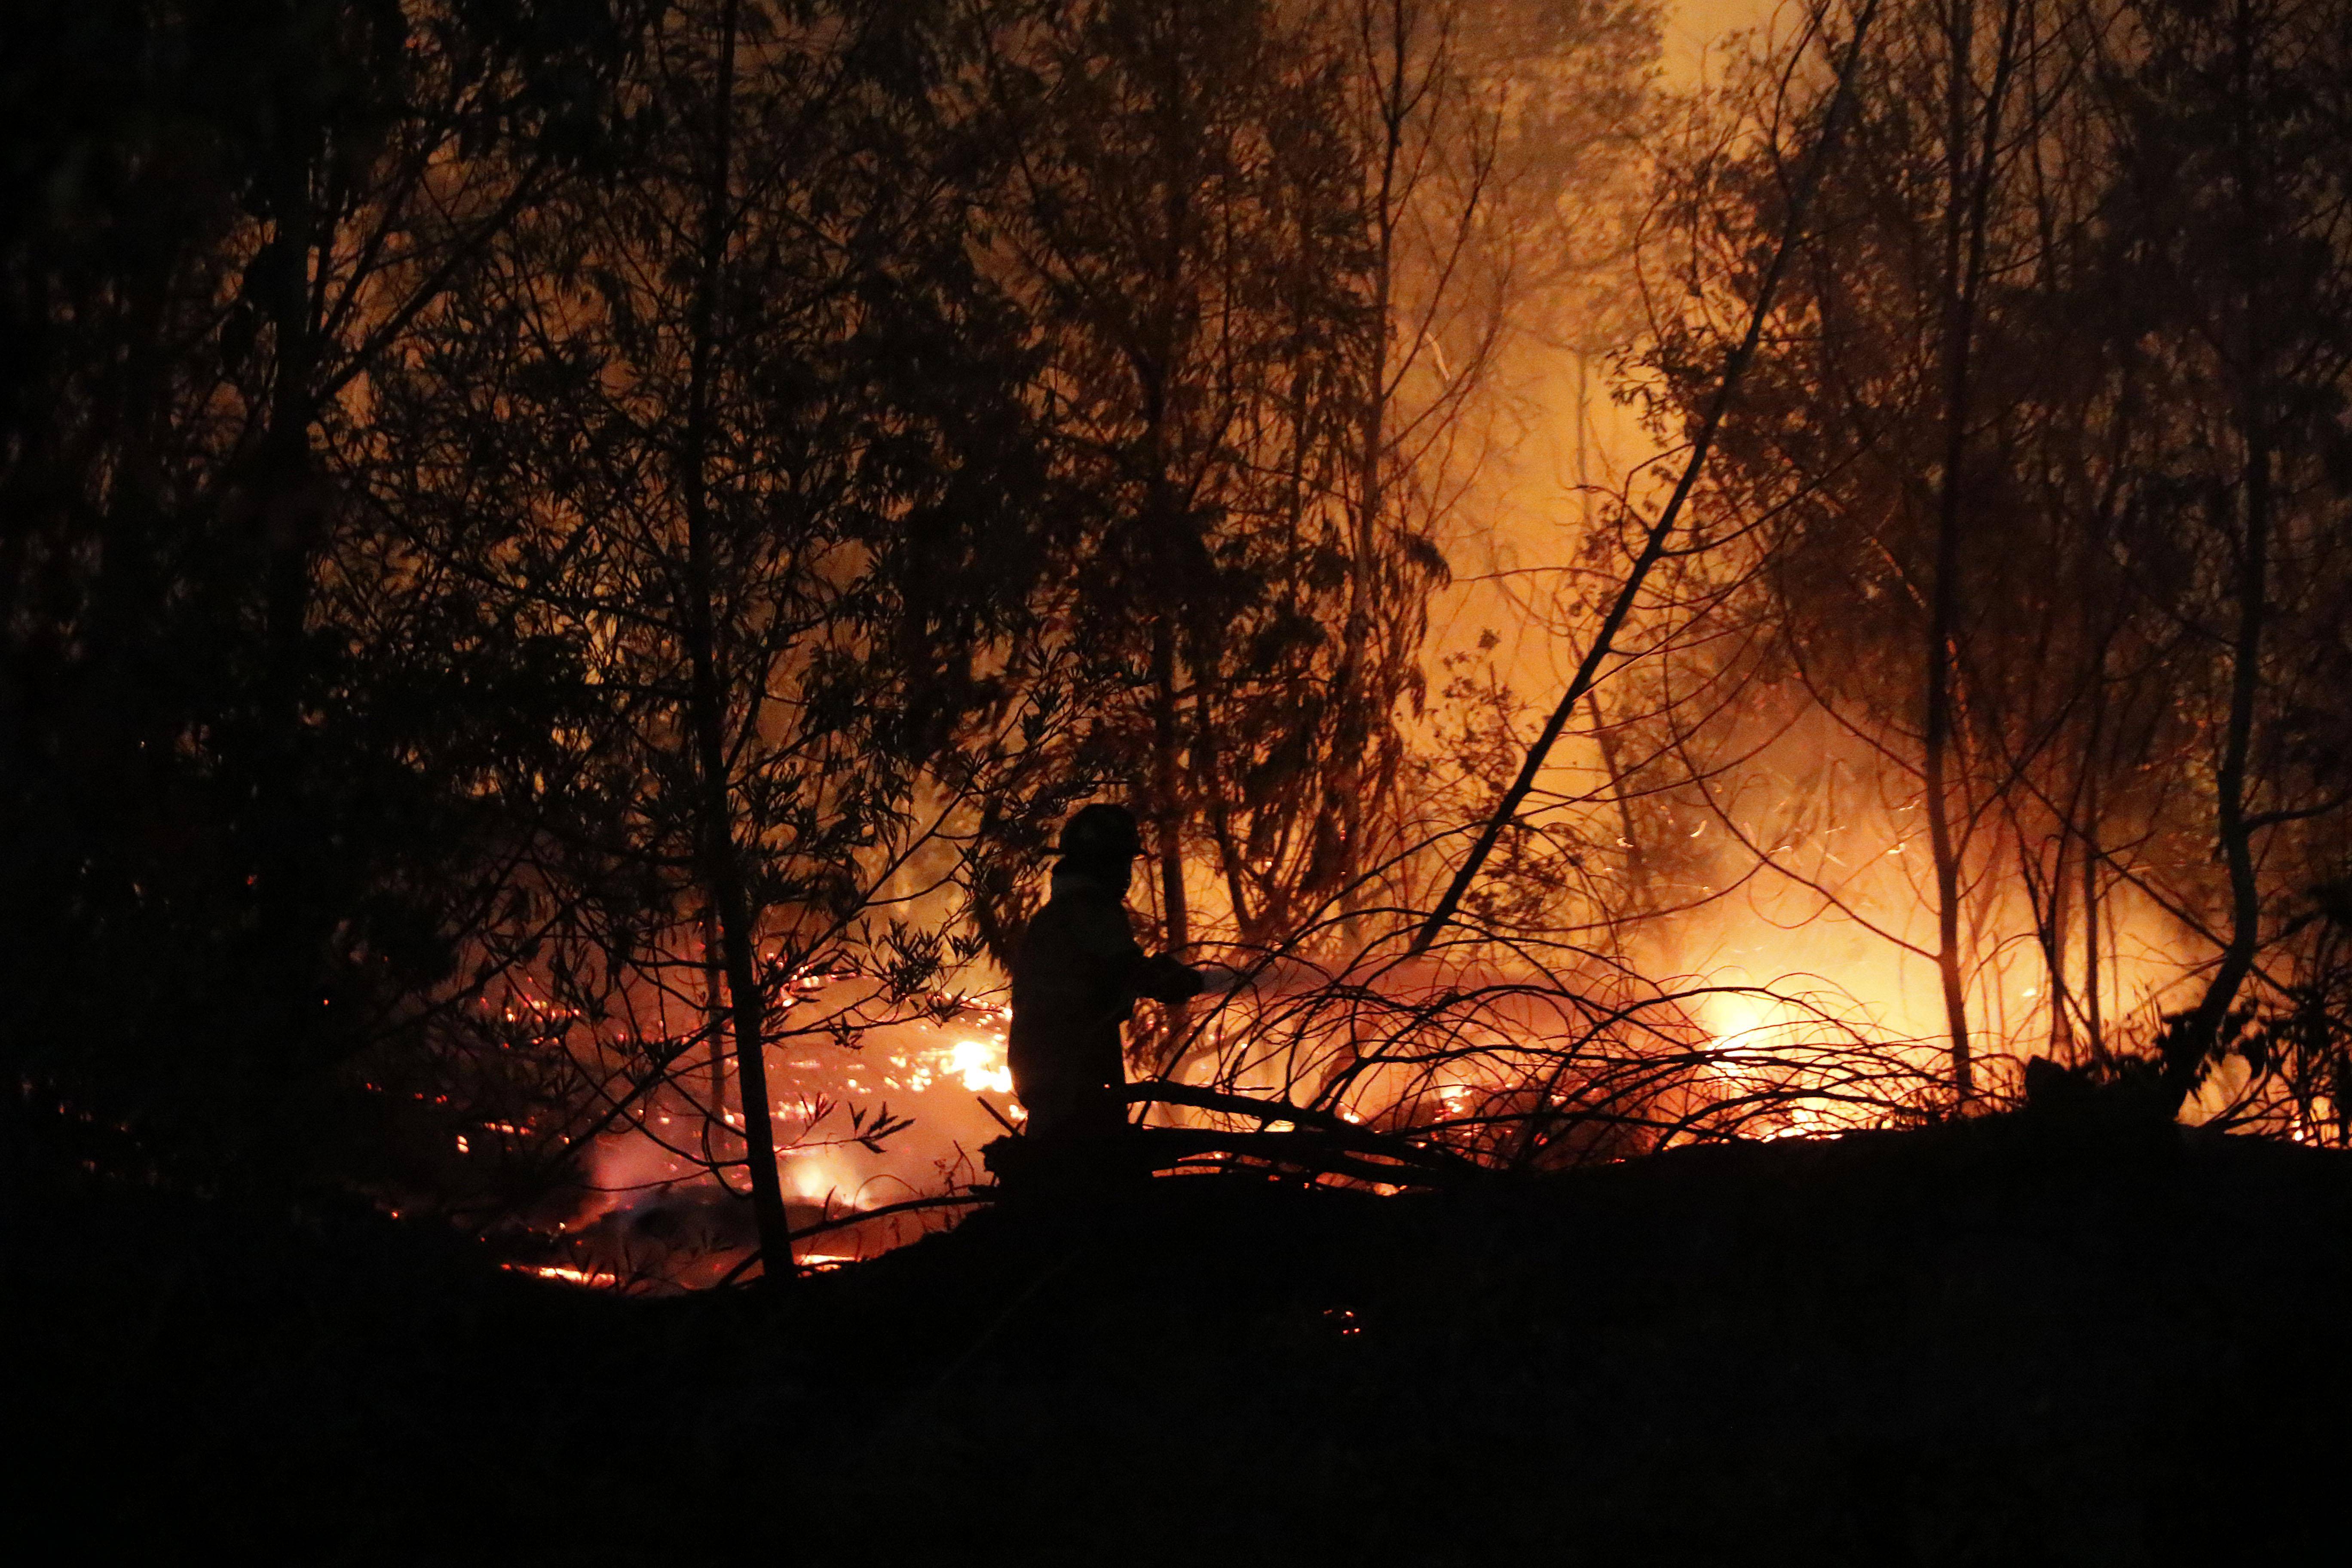 3·13智利森林火灾图片